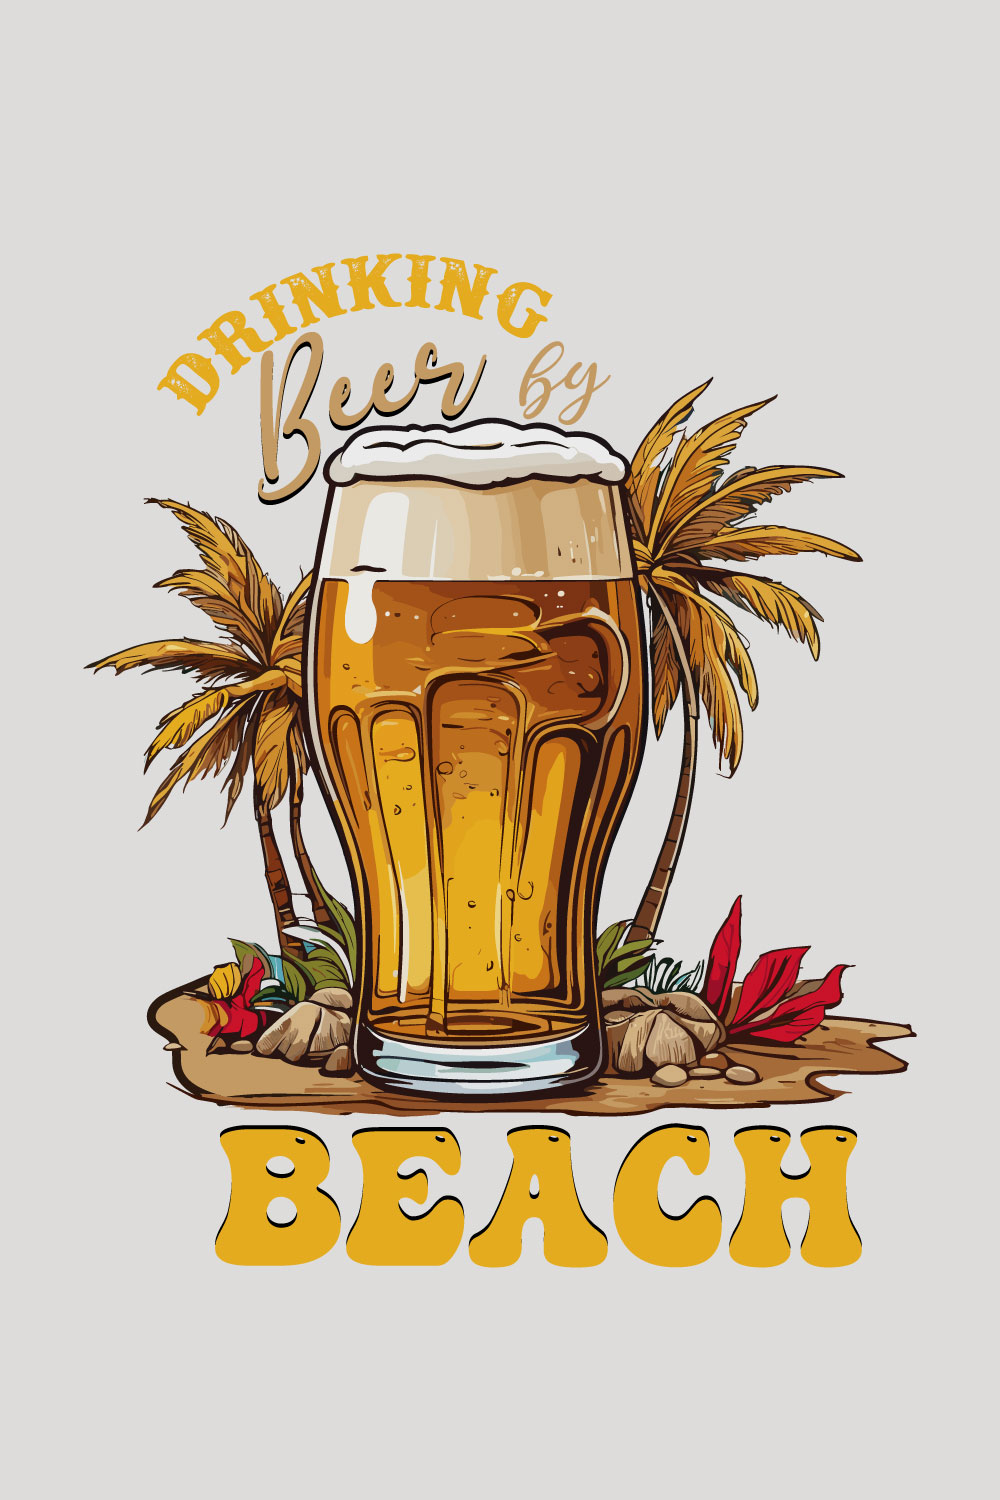 Summer Beer Beach T-shirt Design pinterest preview image.